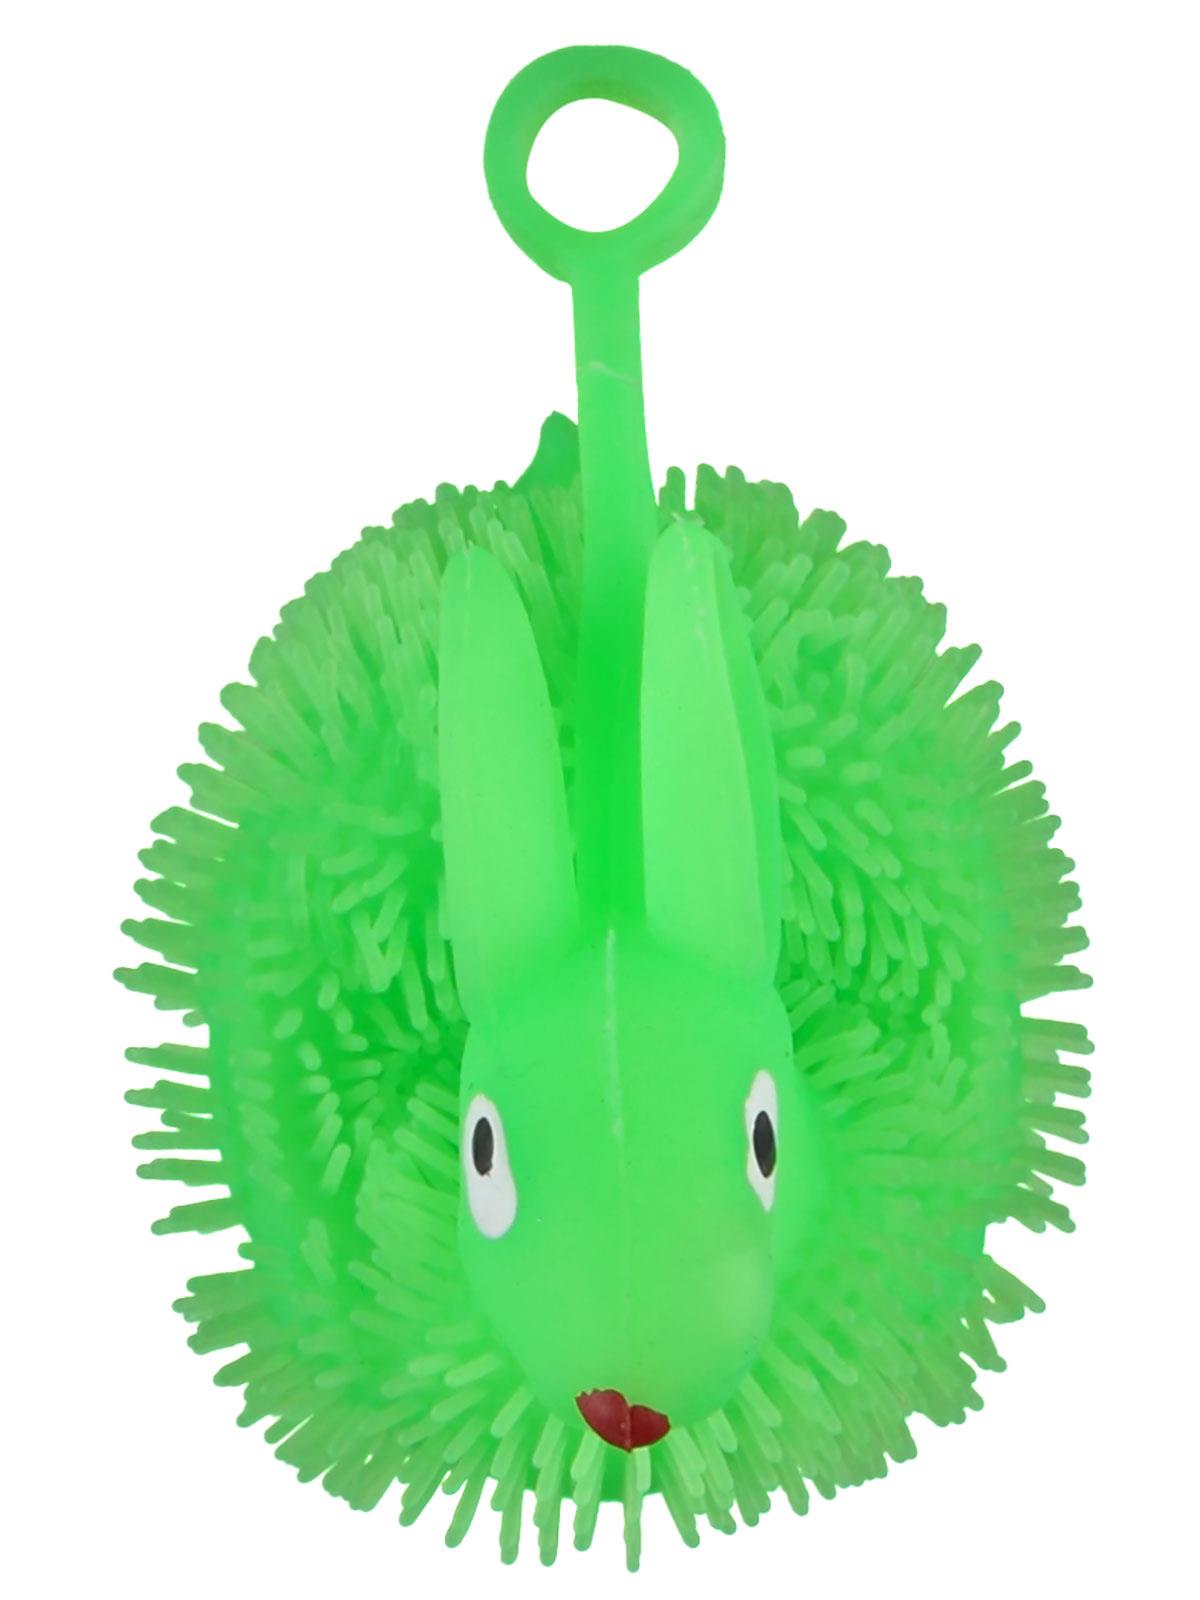 Prestij Oyuncak Işıklı Elastik Tavşan Yeşil